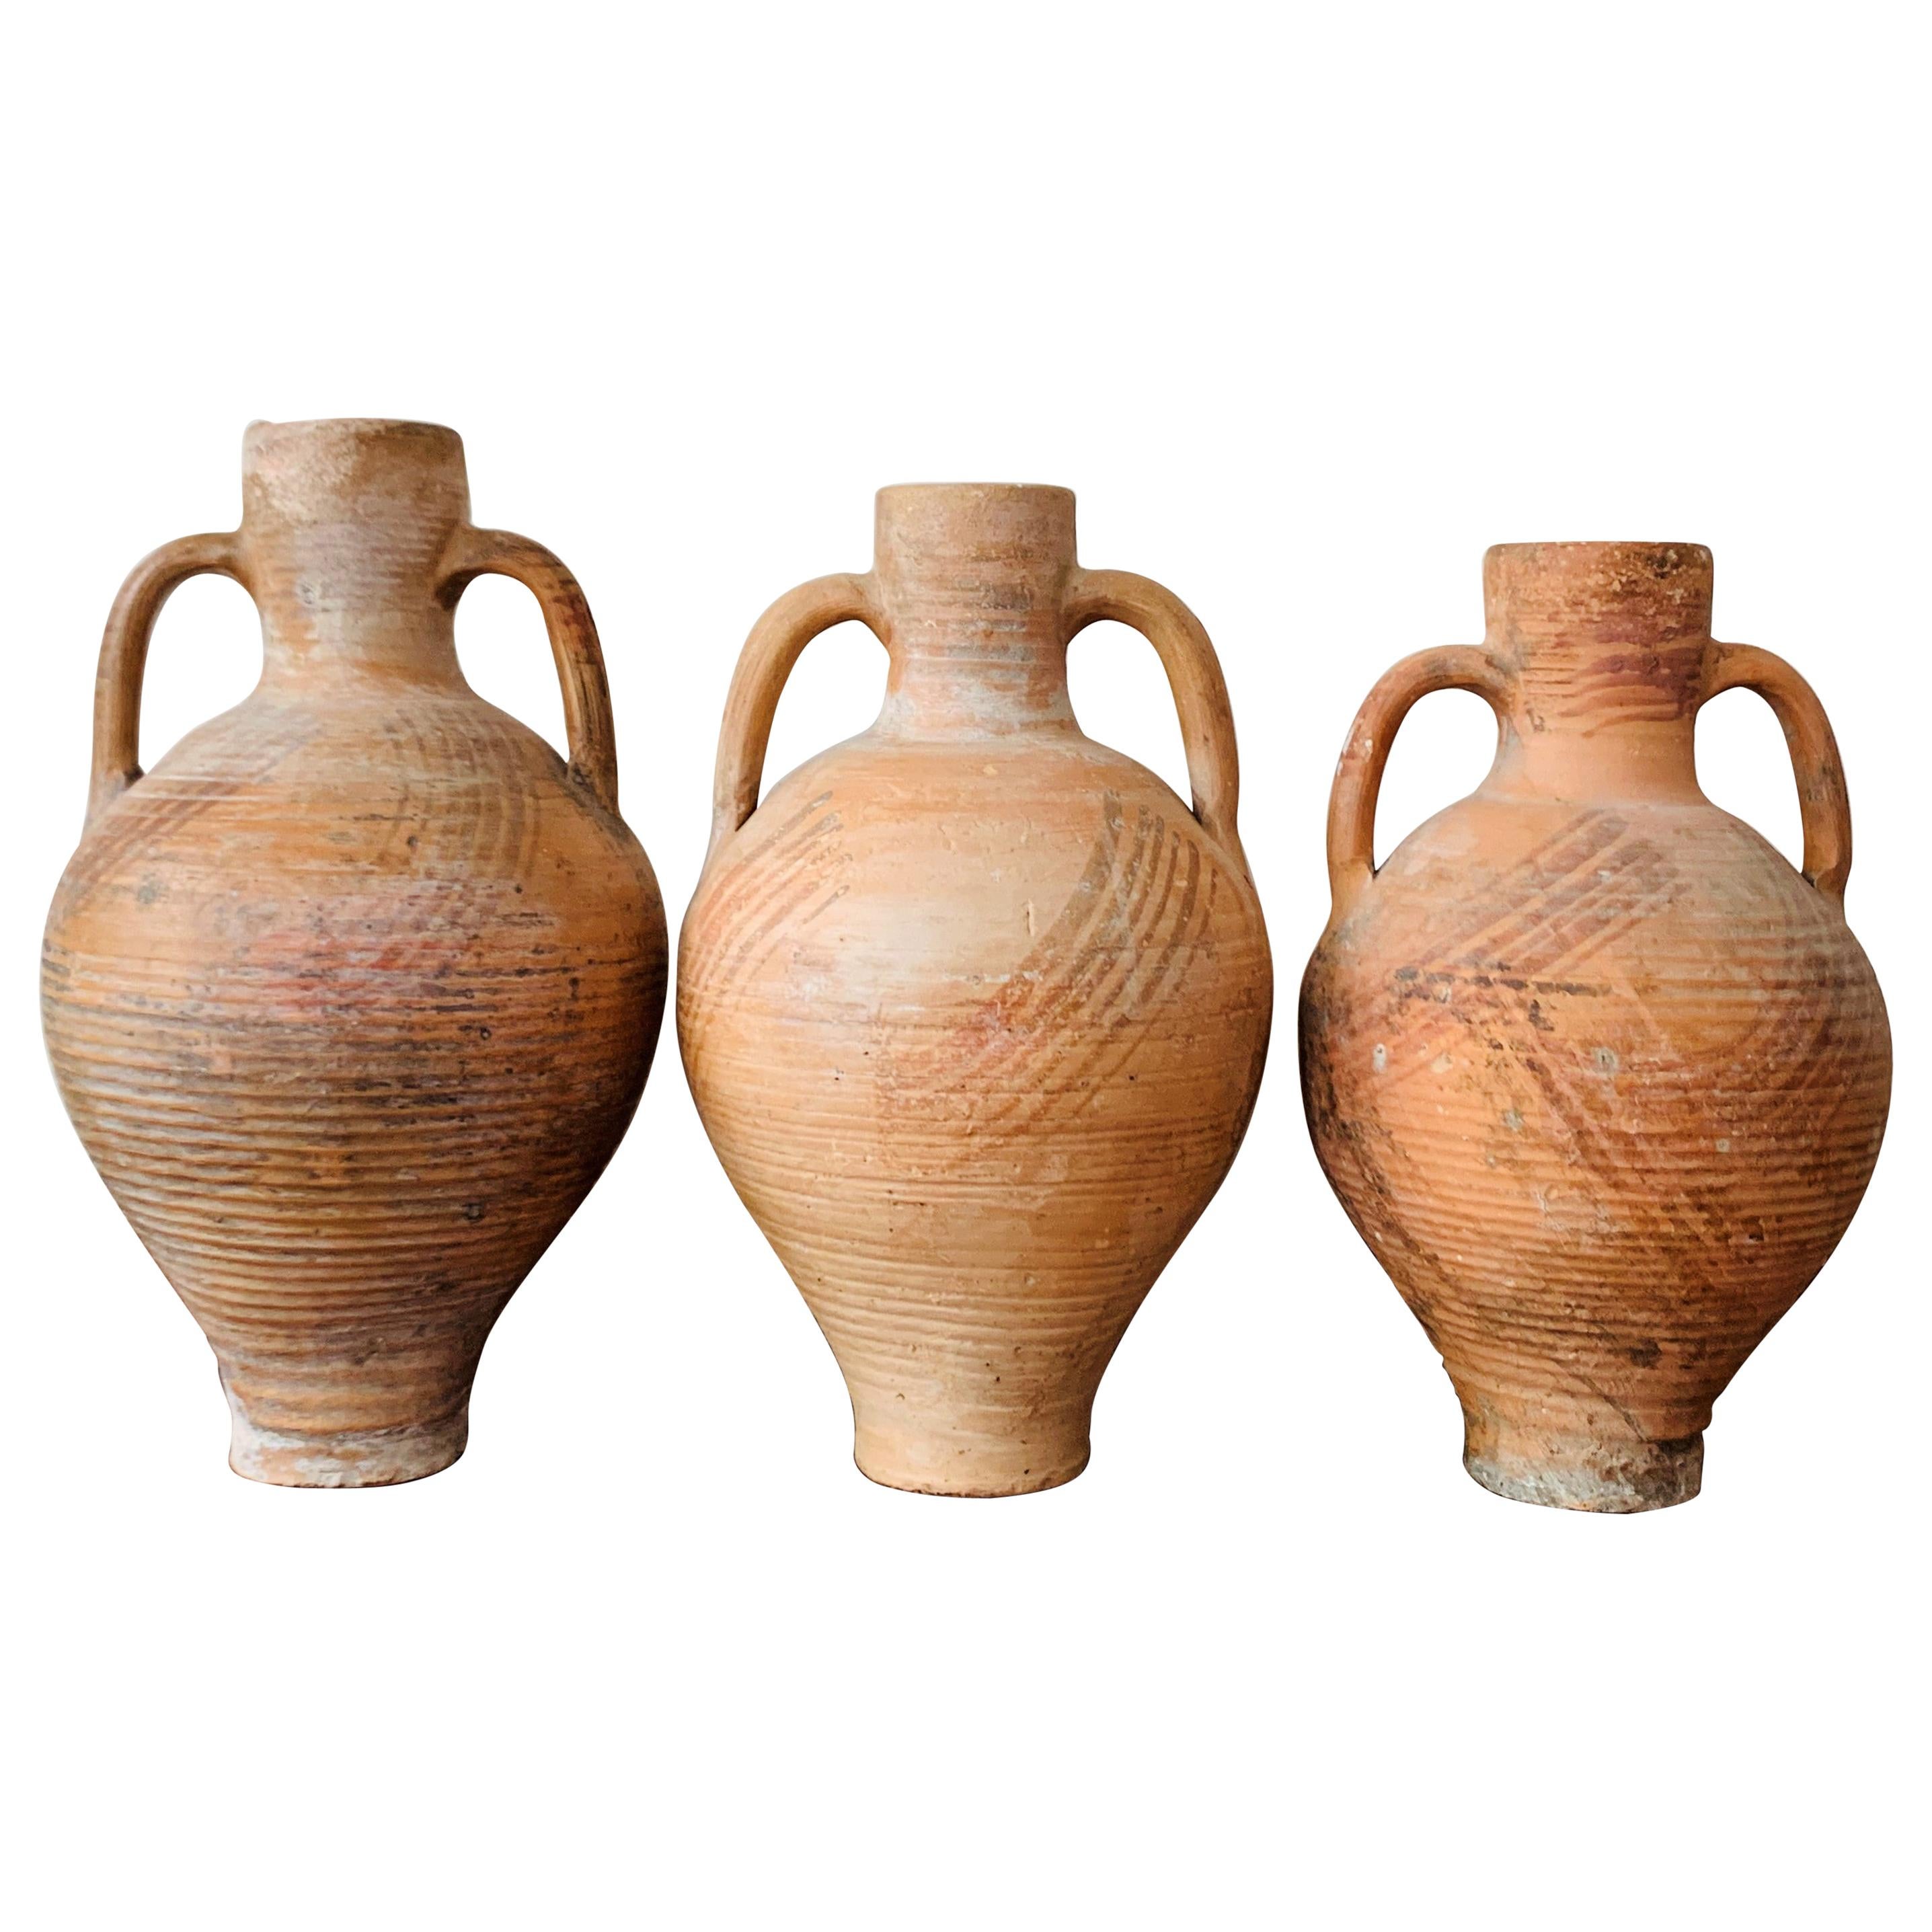 Ensemble de trois pichets Cantaro de Calanda, Espagne, vase en terre cuite du 19ème siècle